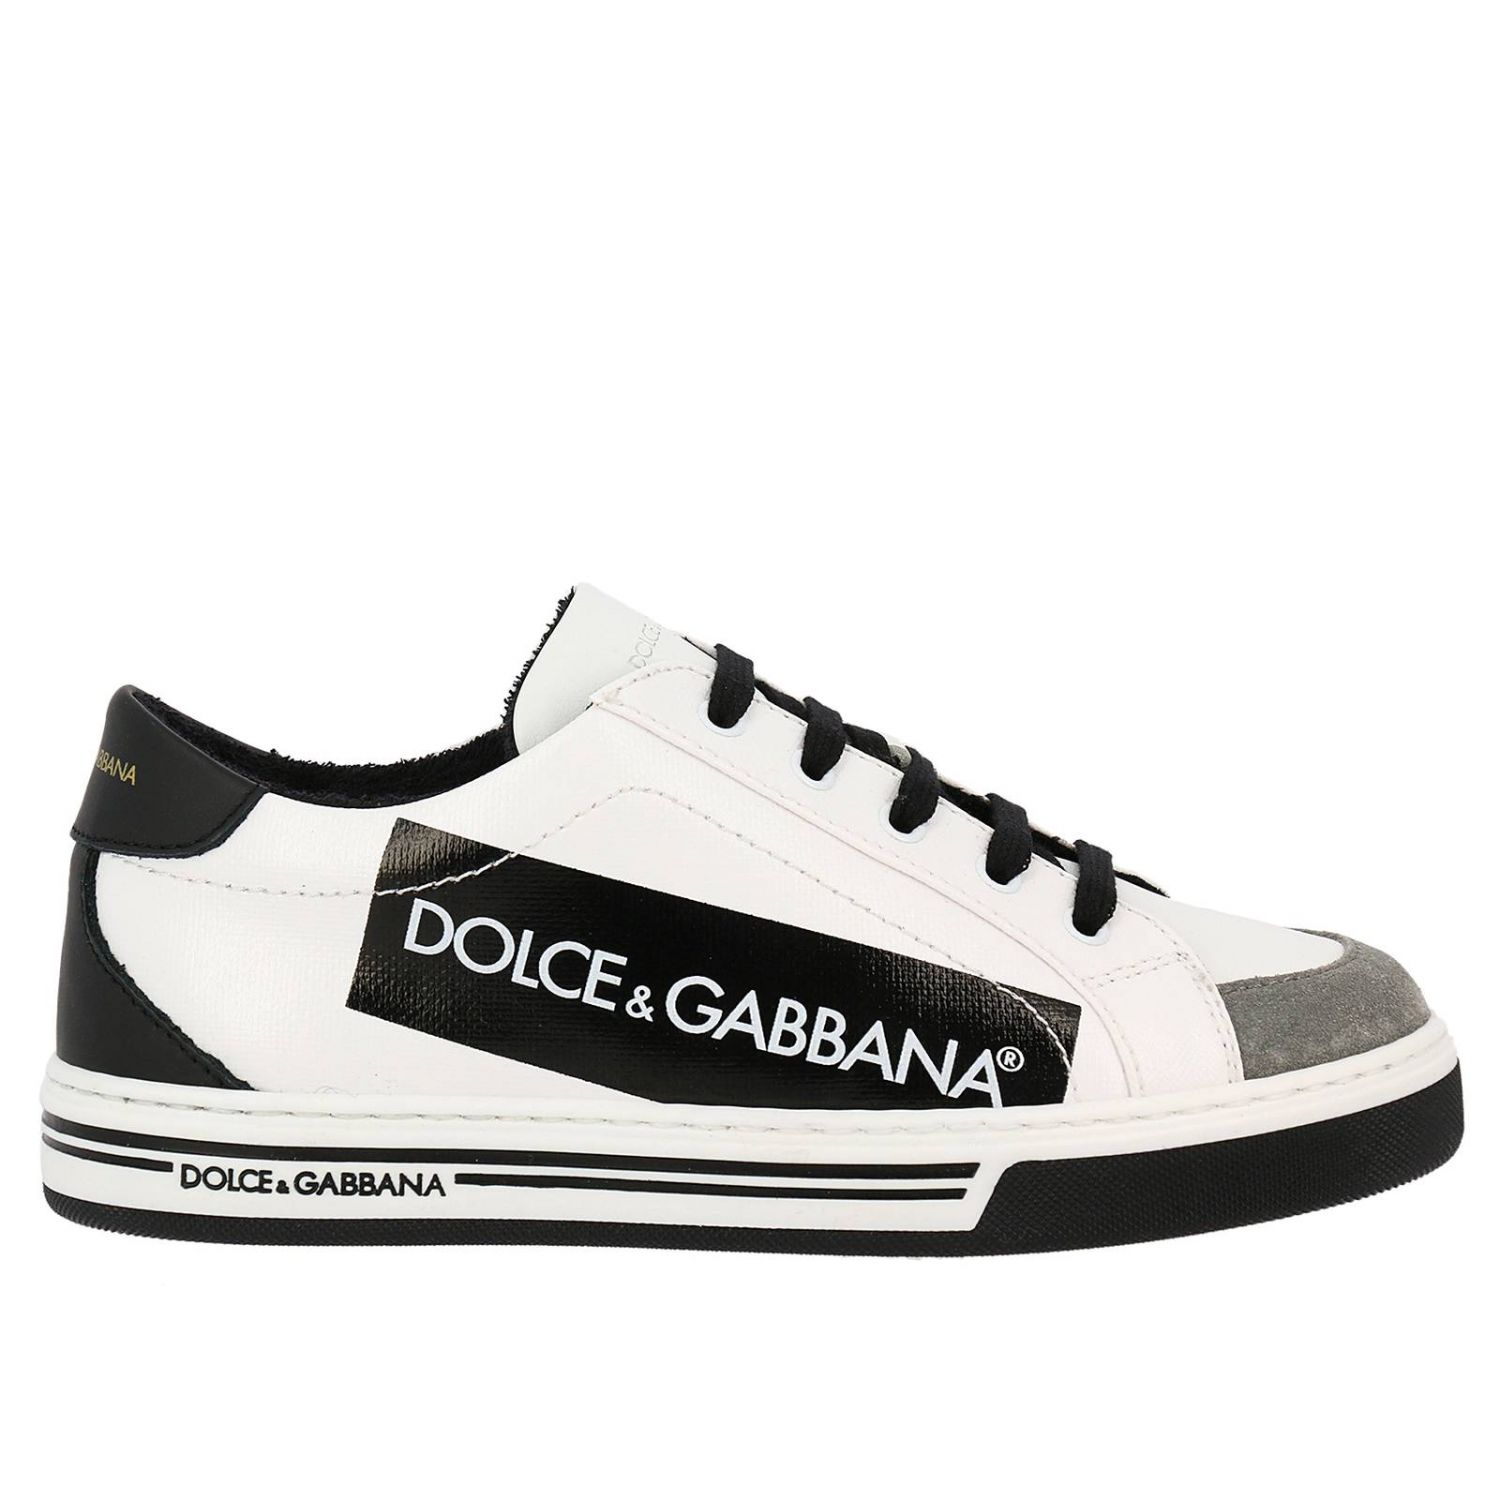 Schuhe Kinder Dolce Gabbana Schuhe Dolce Gabbana Kinder Royal Blue Schuhe Dolce Gabbana Da0637 An679 Giglio De